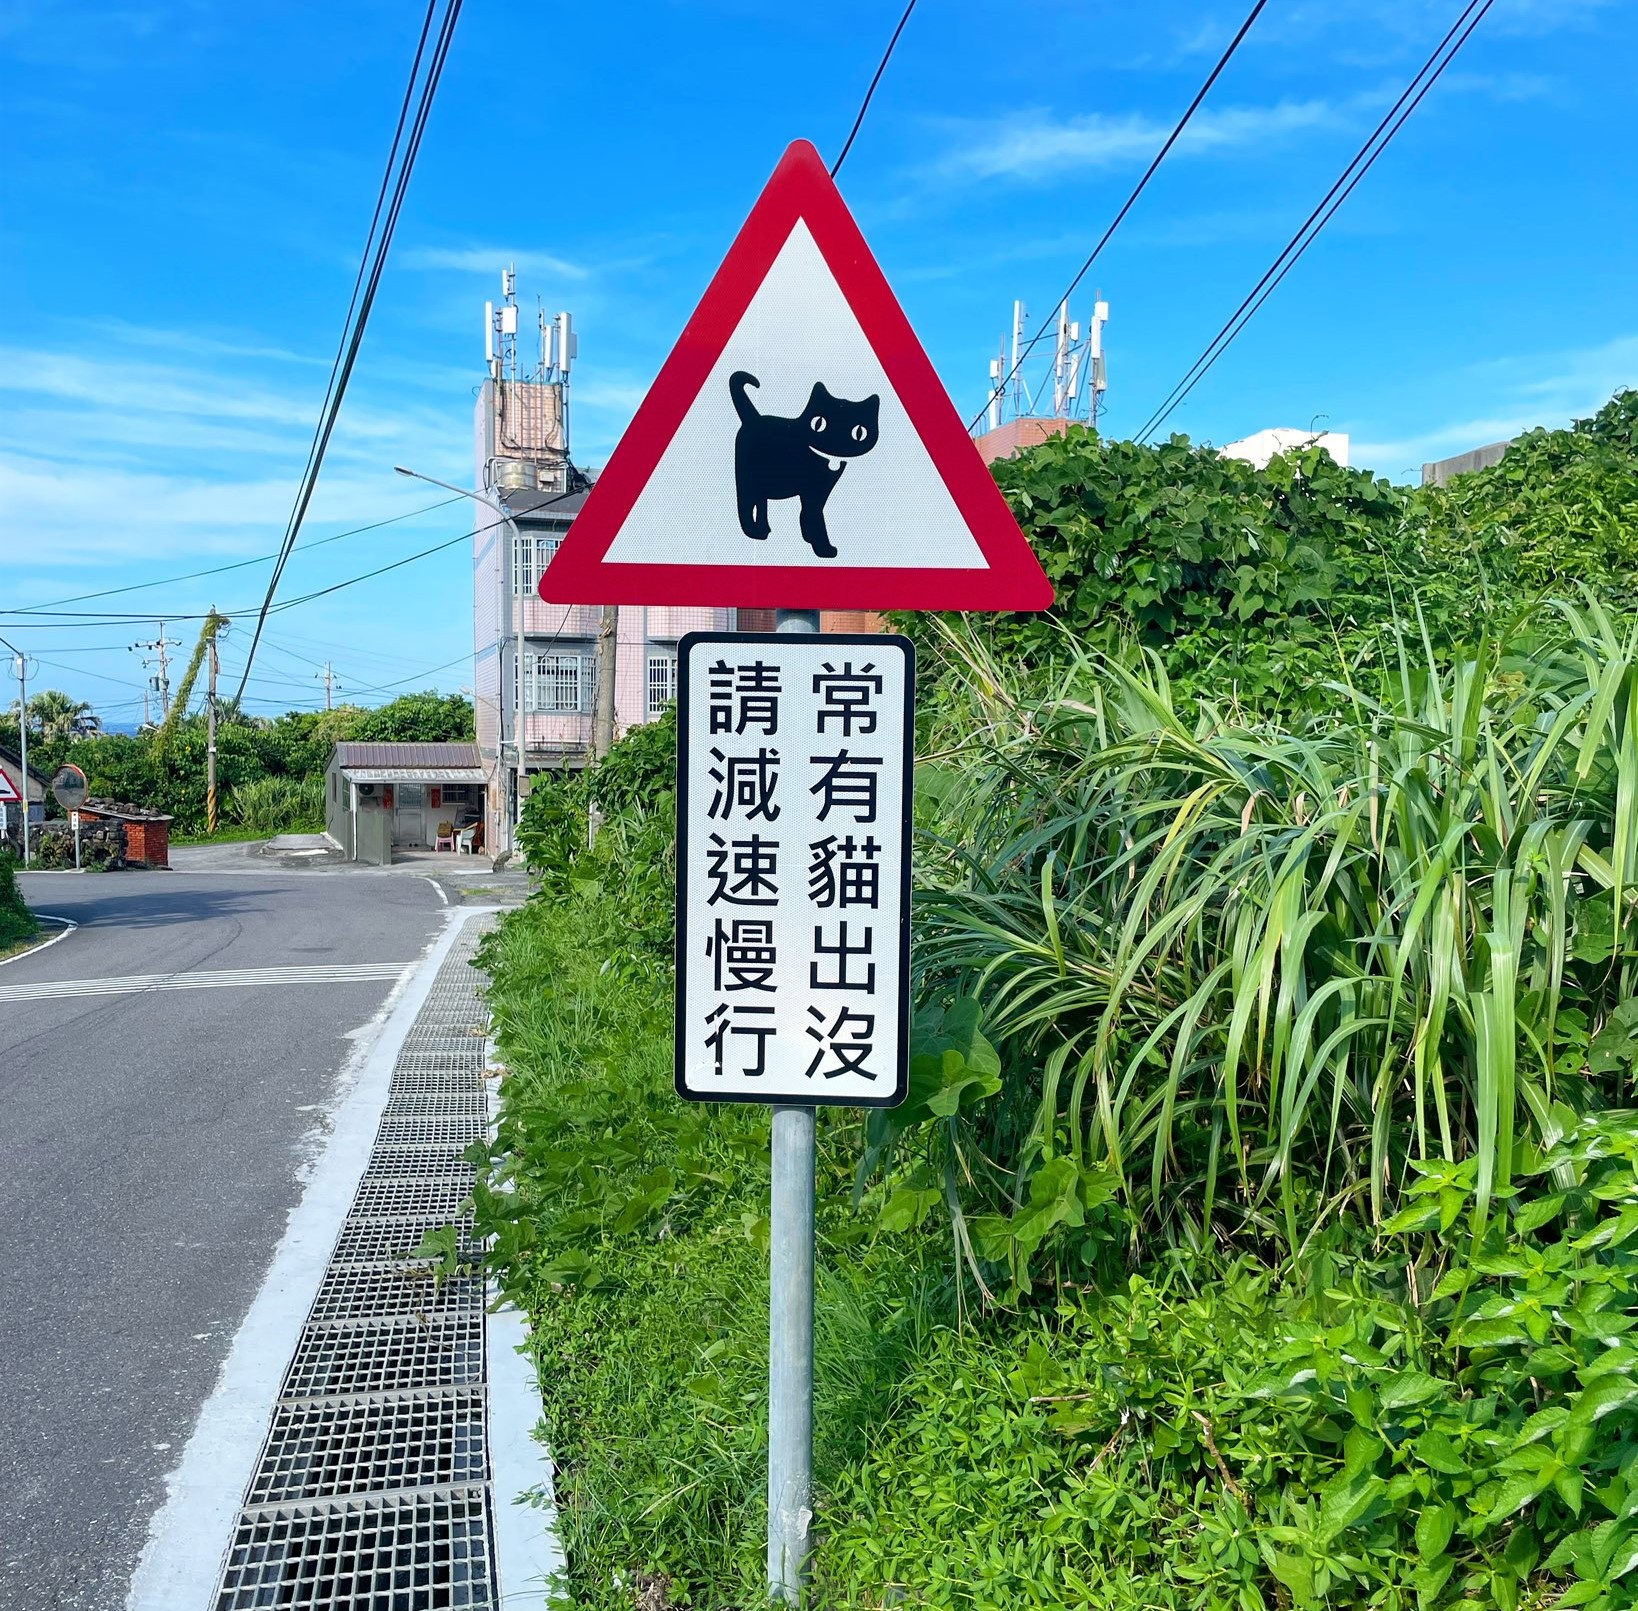 Biển báo giao thông “Cẩn thận mèo” tại Hou-dong, Tân Bắc, nhắc nhở người đi đường chú ý giảm tốc độ. (Ảnh: Cục Giao thông Tân Bắc)